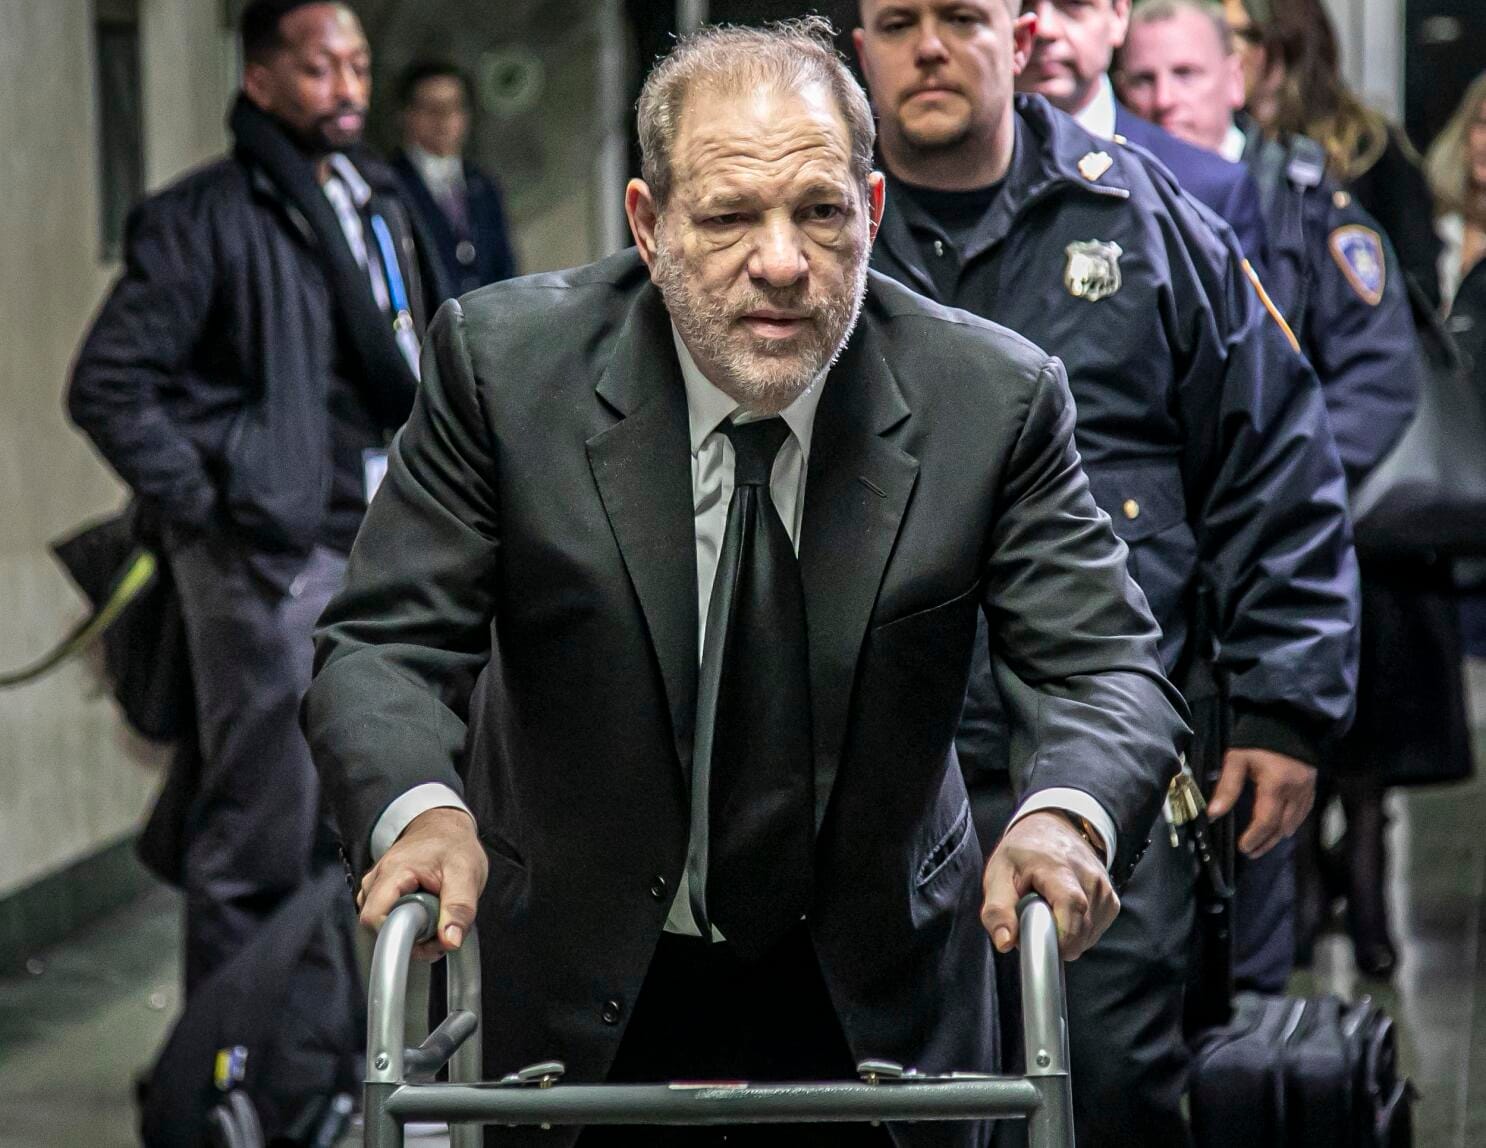 Harvey Weinstein's New York Sex Crime Conviction Overturned in Shocking Twist